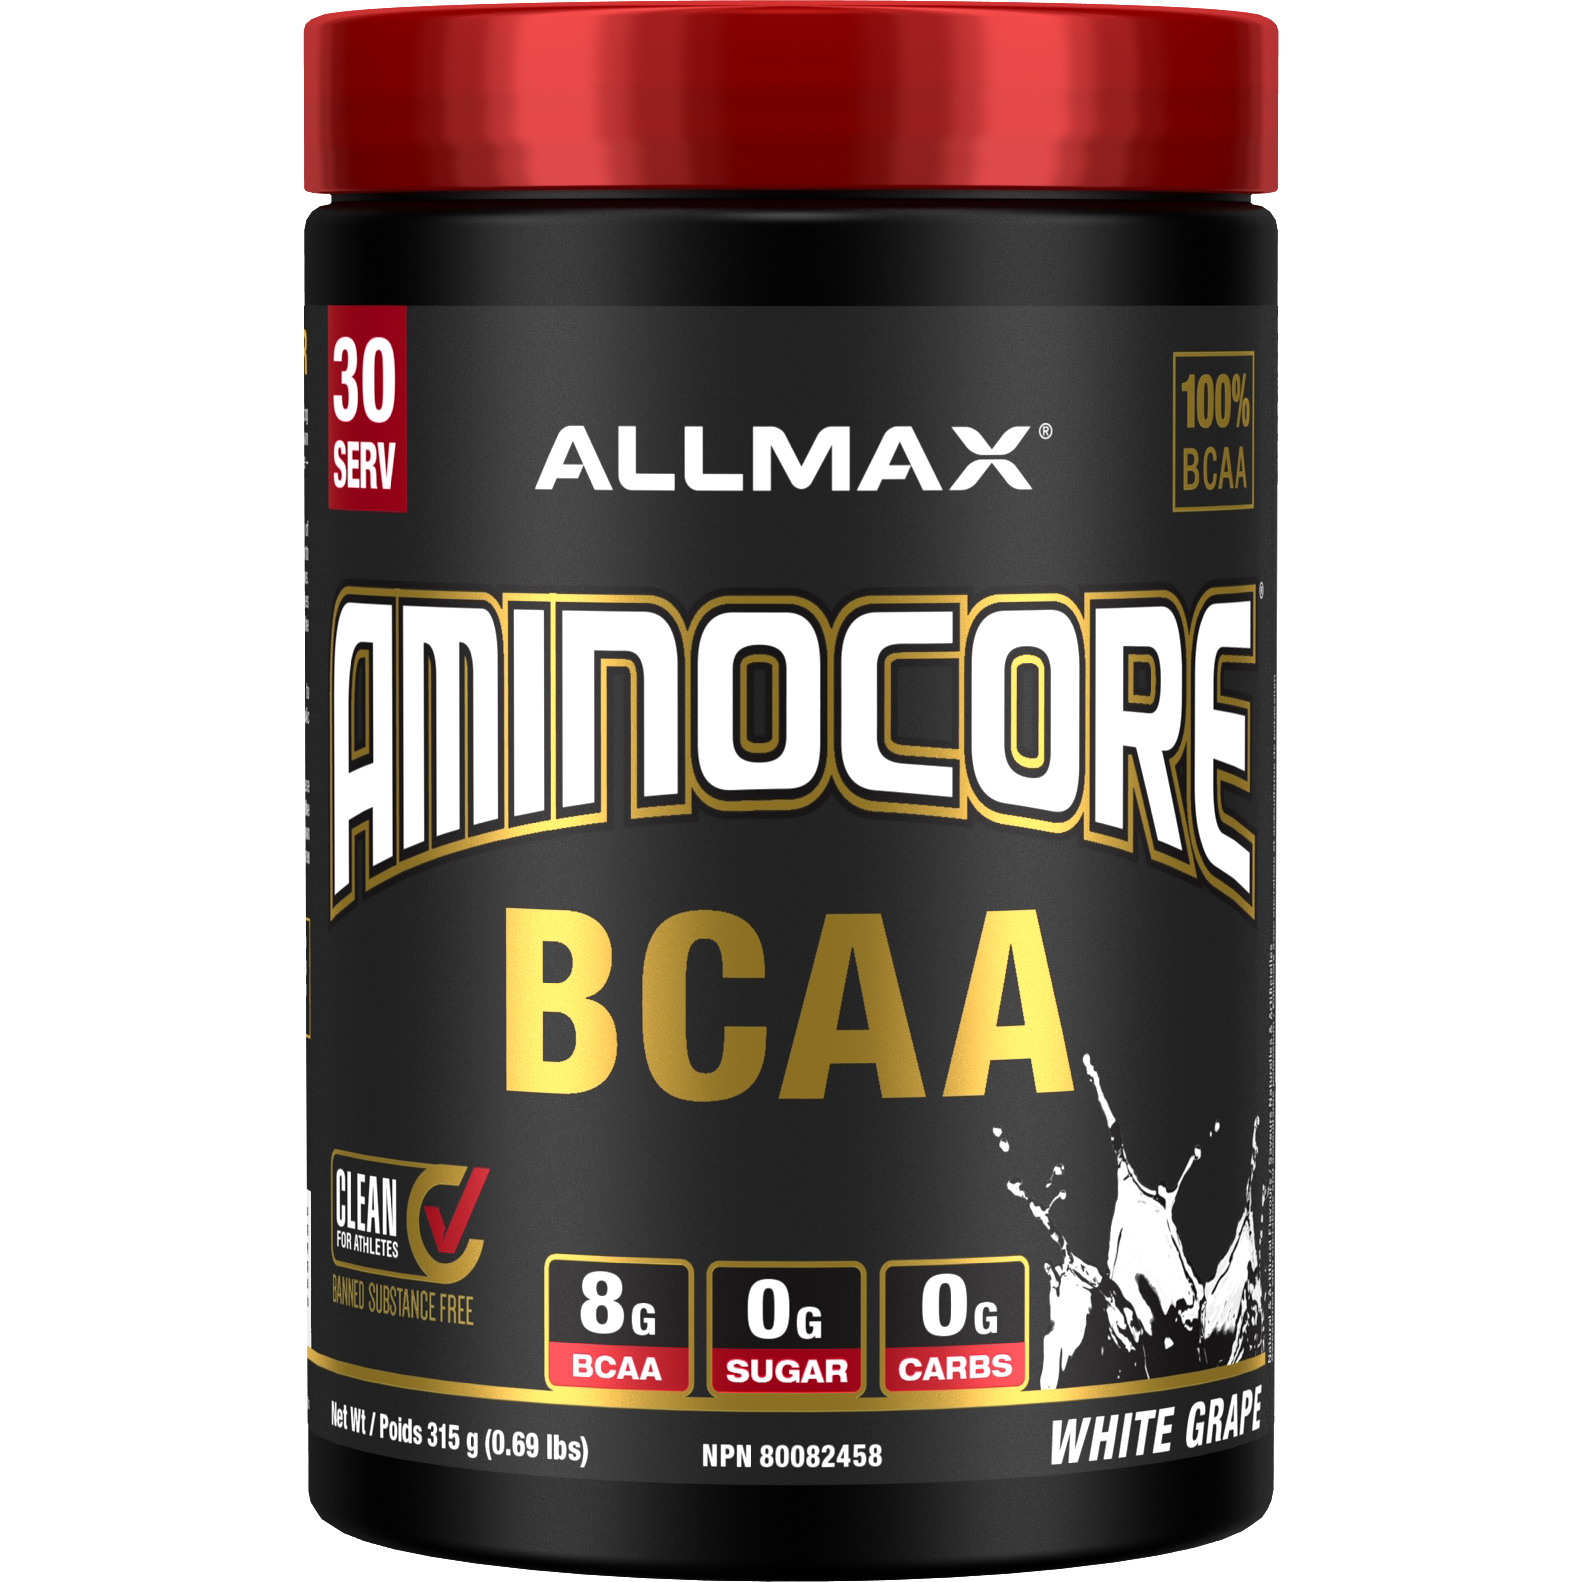 NEW Allmax Aminocore (30 servings) BCAAs and Amino Acids White Grape Allmax Nutrition